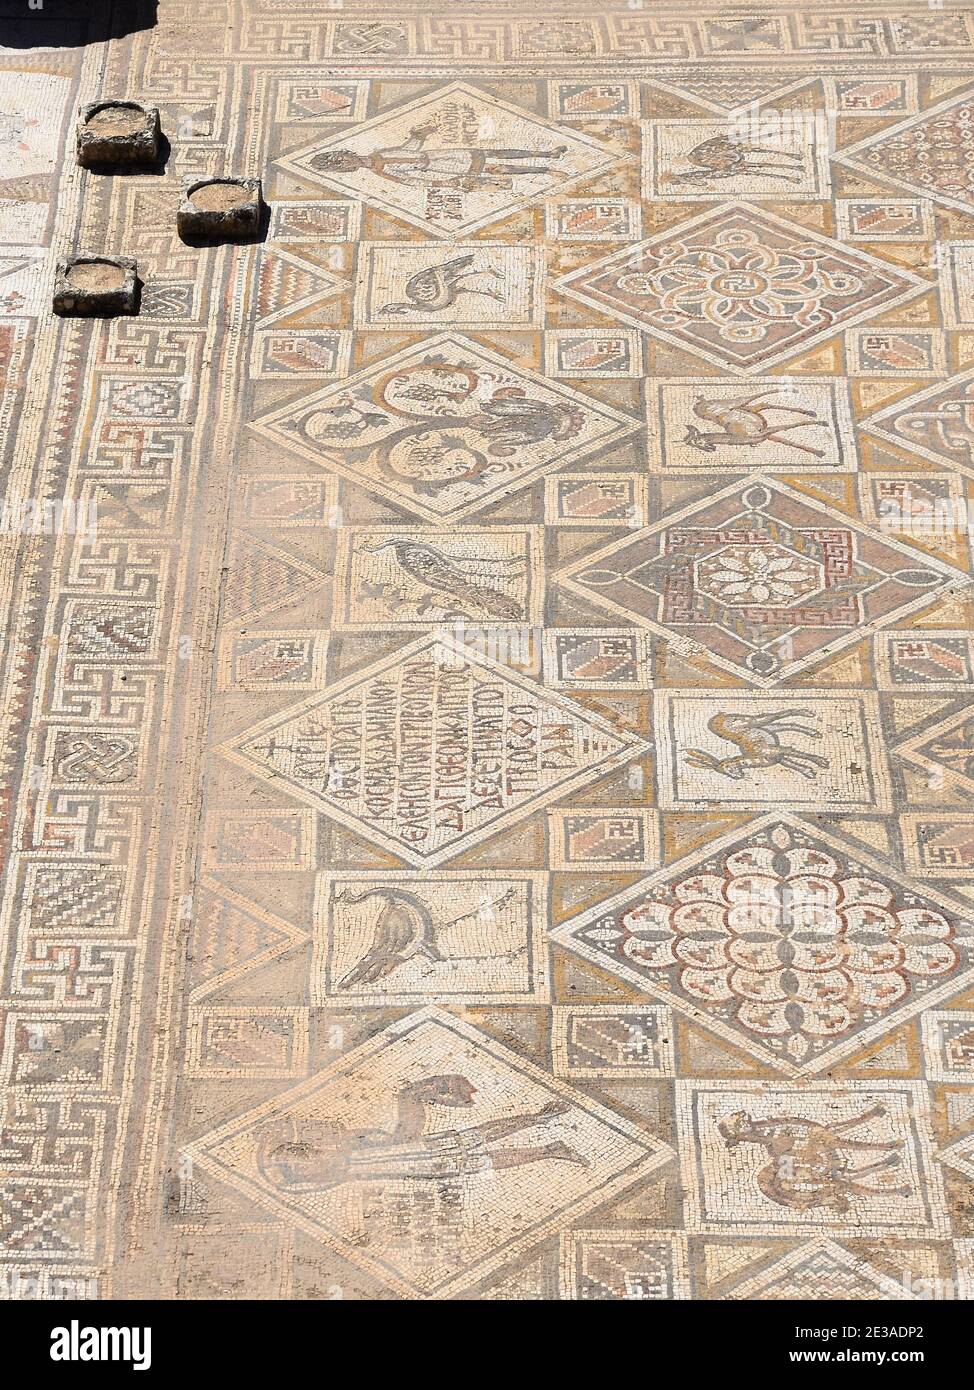 Mosaico bizantino en el piso de la Iglesia de San Juan Bautista ruinas en Jerash (Gerasa), Jordania, Oriente Medio. Piso de la época bizantina con mosaico. Foto de stock